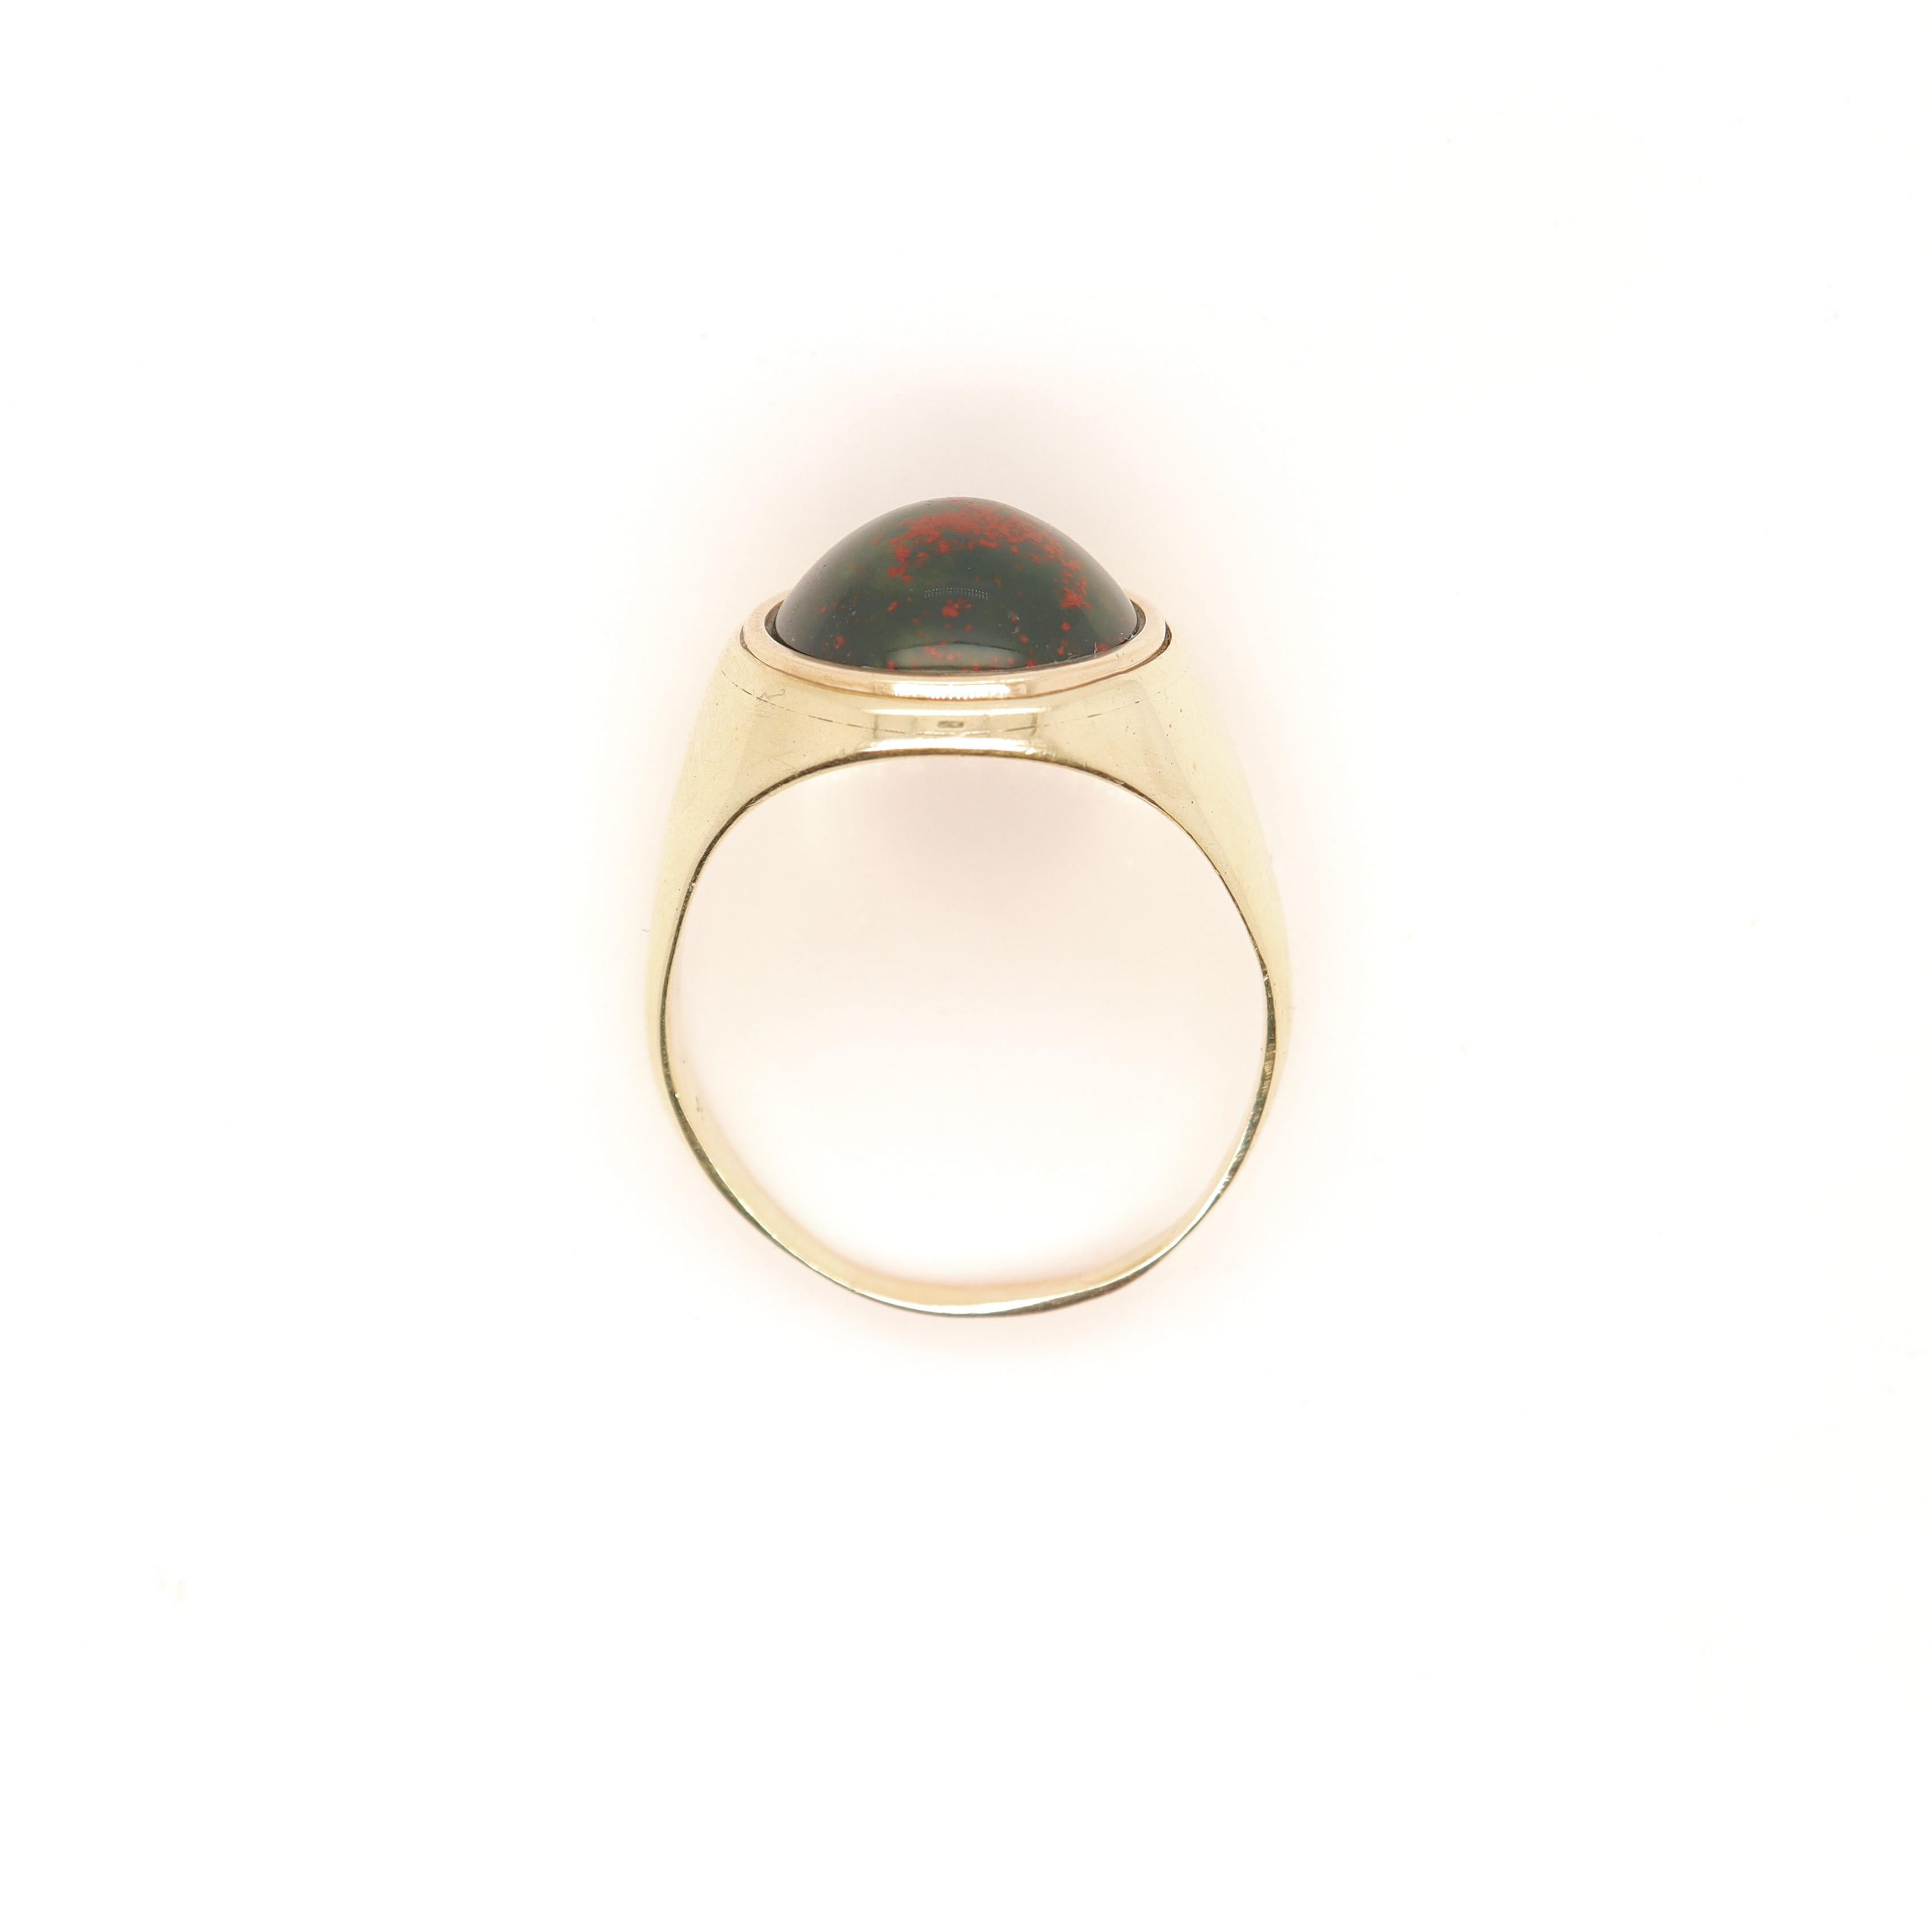 Signed Edwardian Marcus & Co 14K Gold & Bloodstone Cabochon Signet Style Ring 2